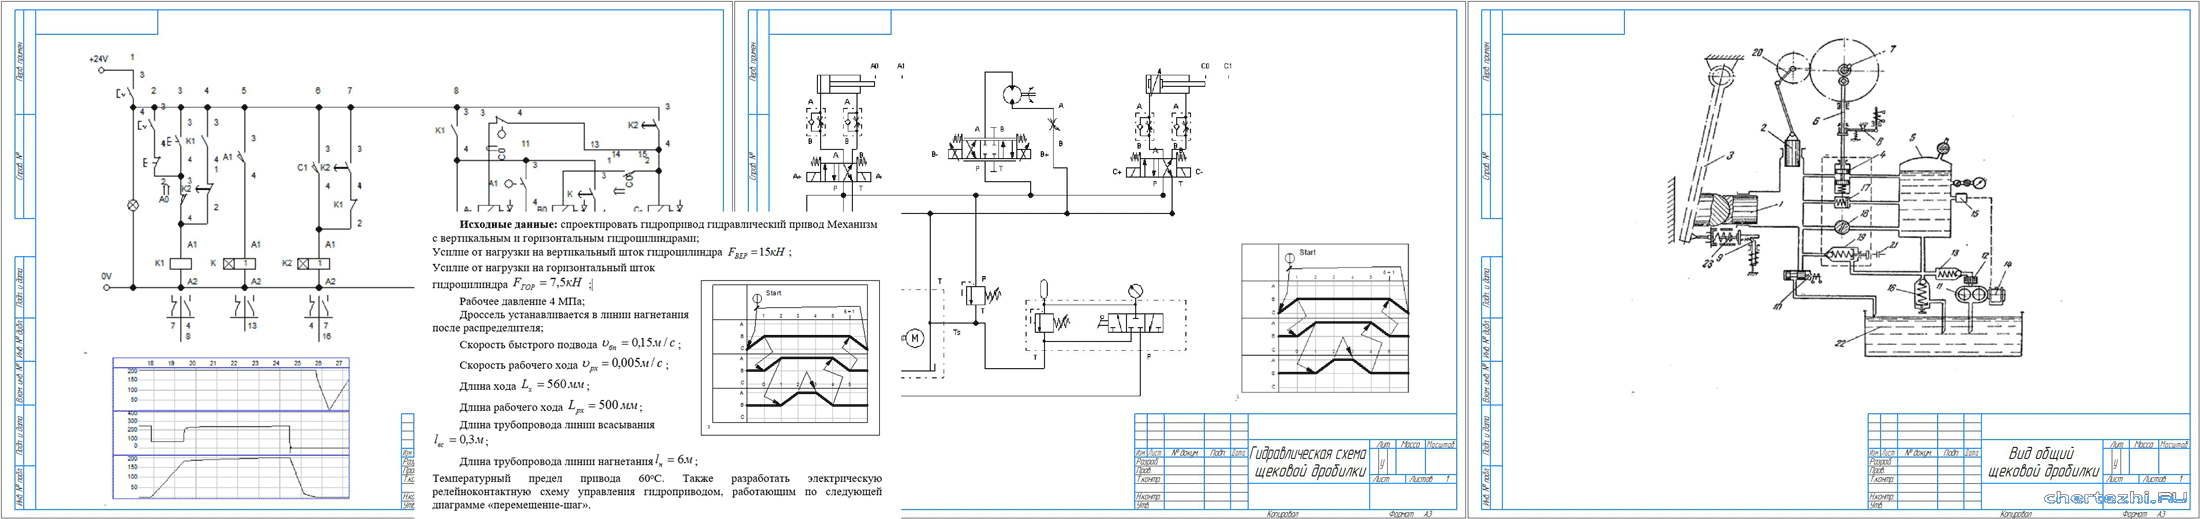 Курсовой проект - Проектирование гидропривода щековой дробилки с разработкой автоматической системы управления